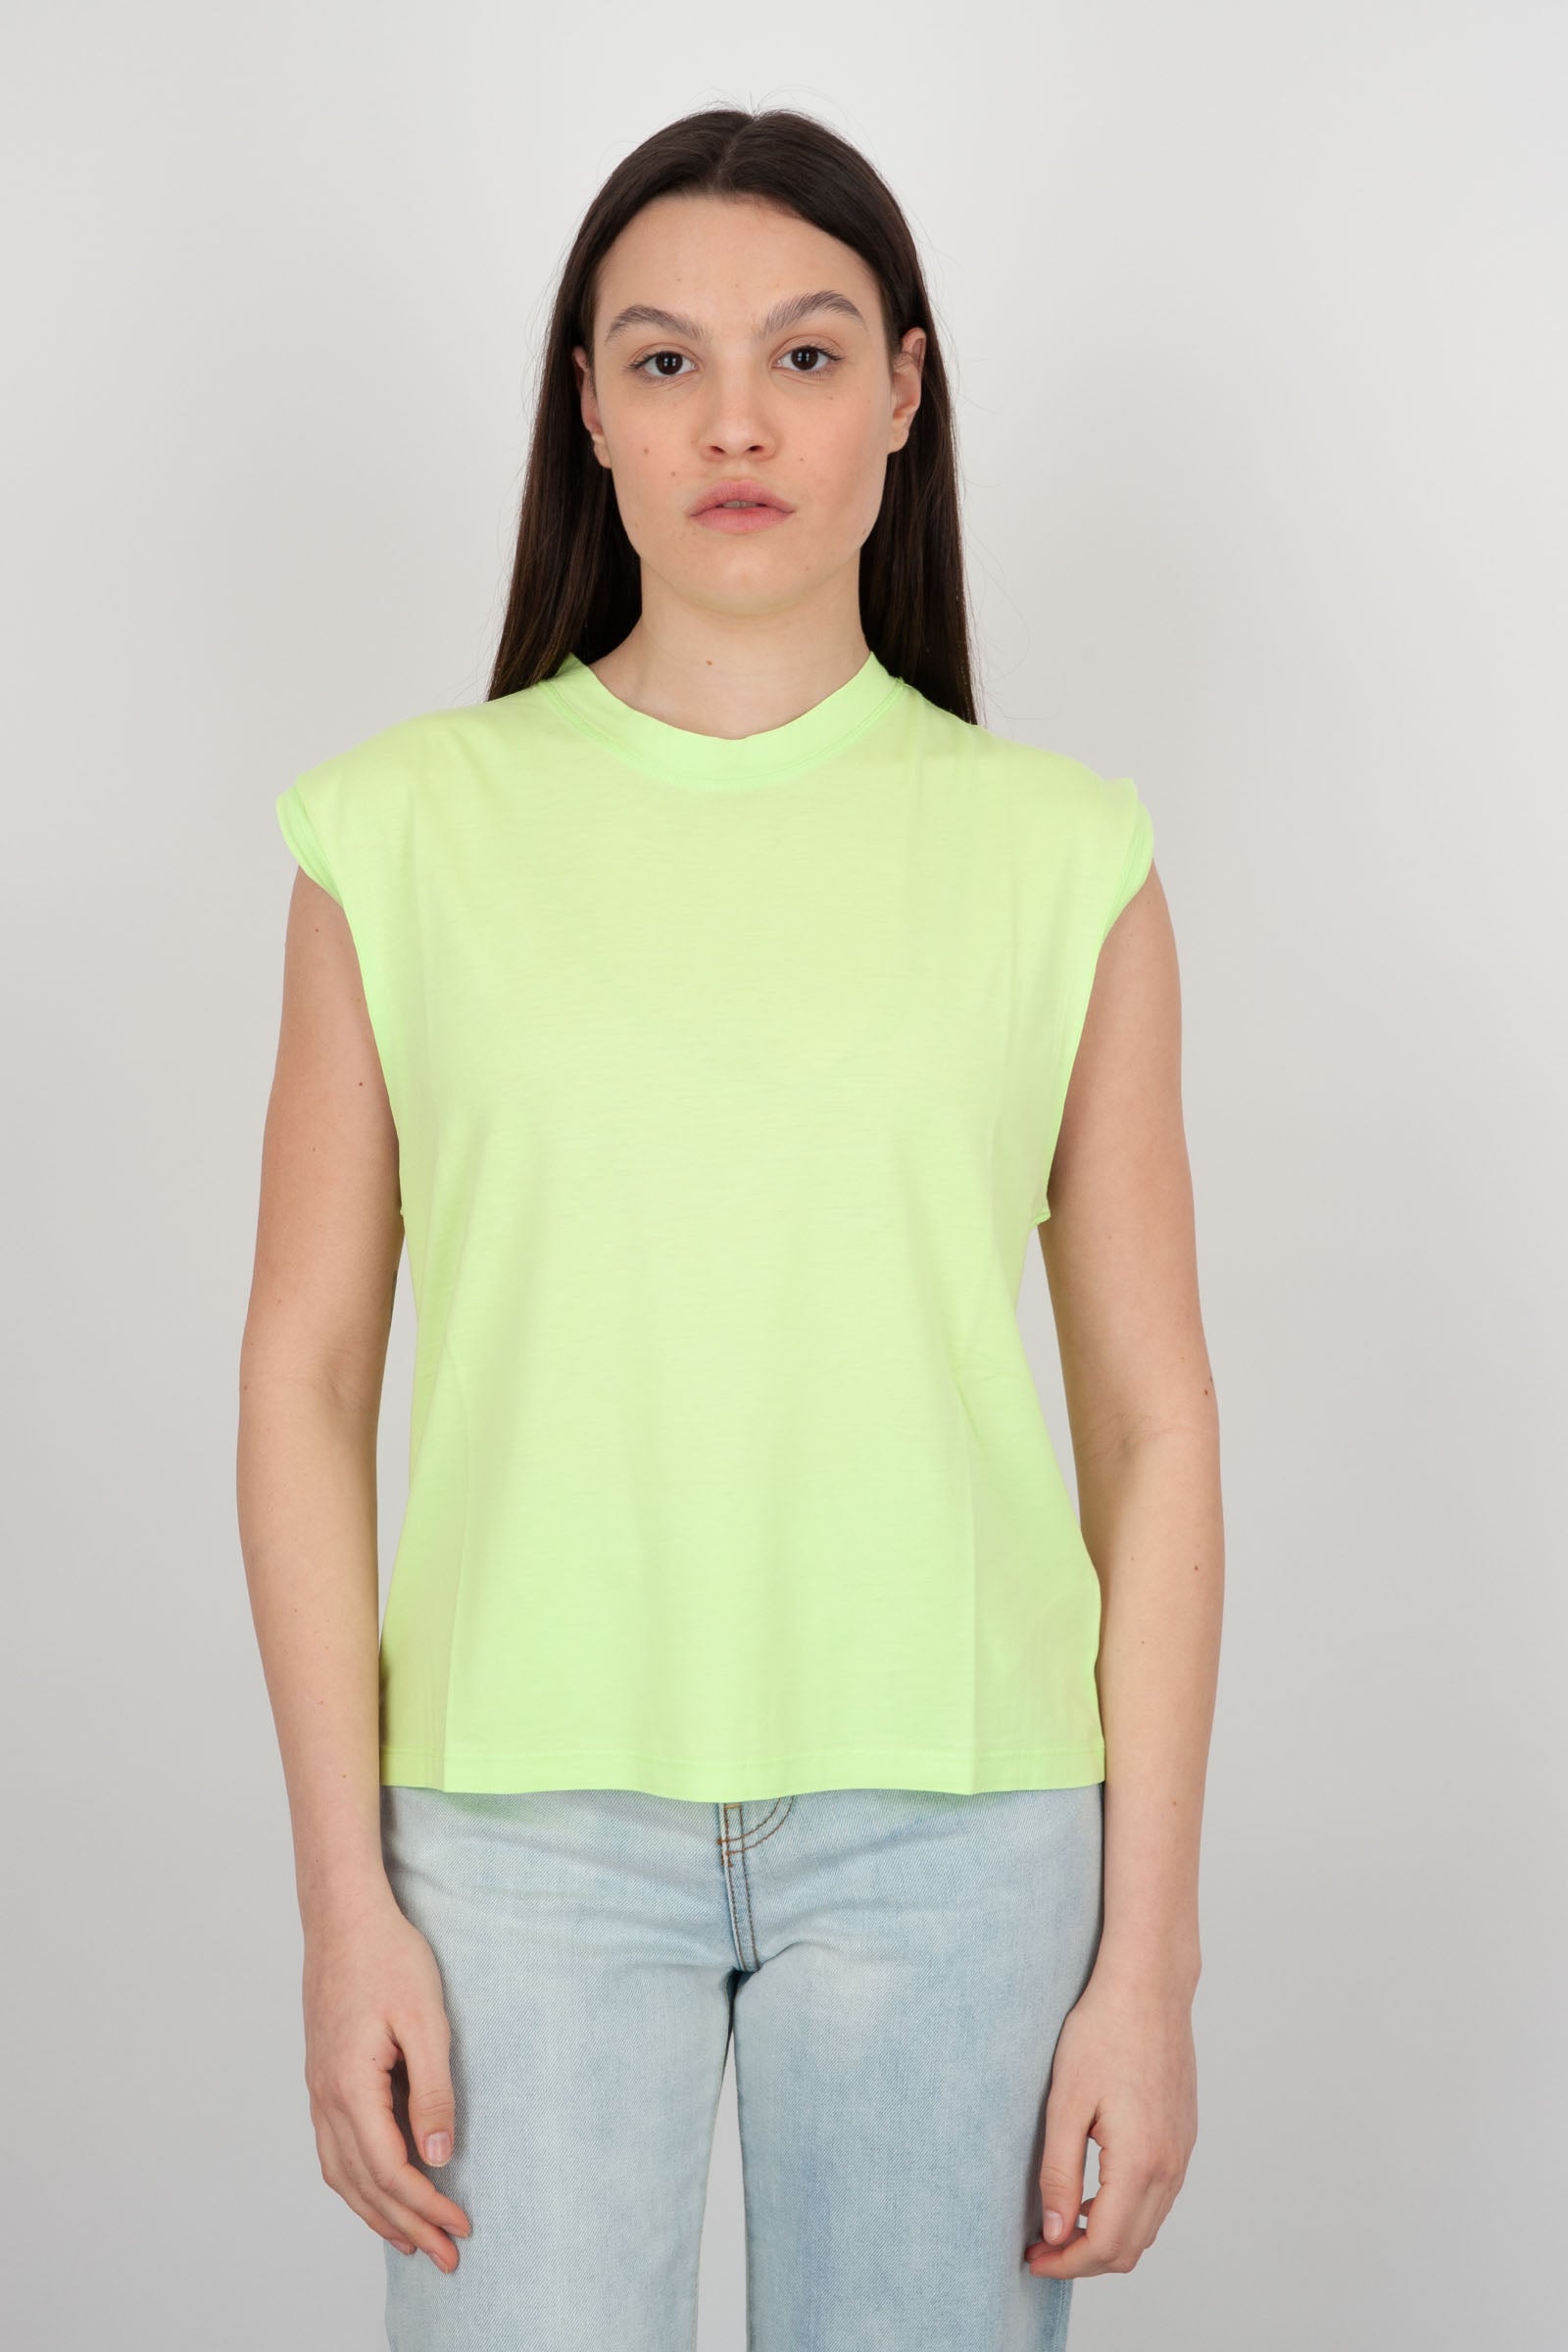 Absolut Cashmere T-shirt Girocollo Suzana Cotone Giallo Fluo - 1